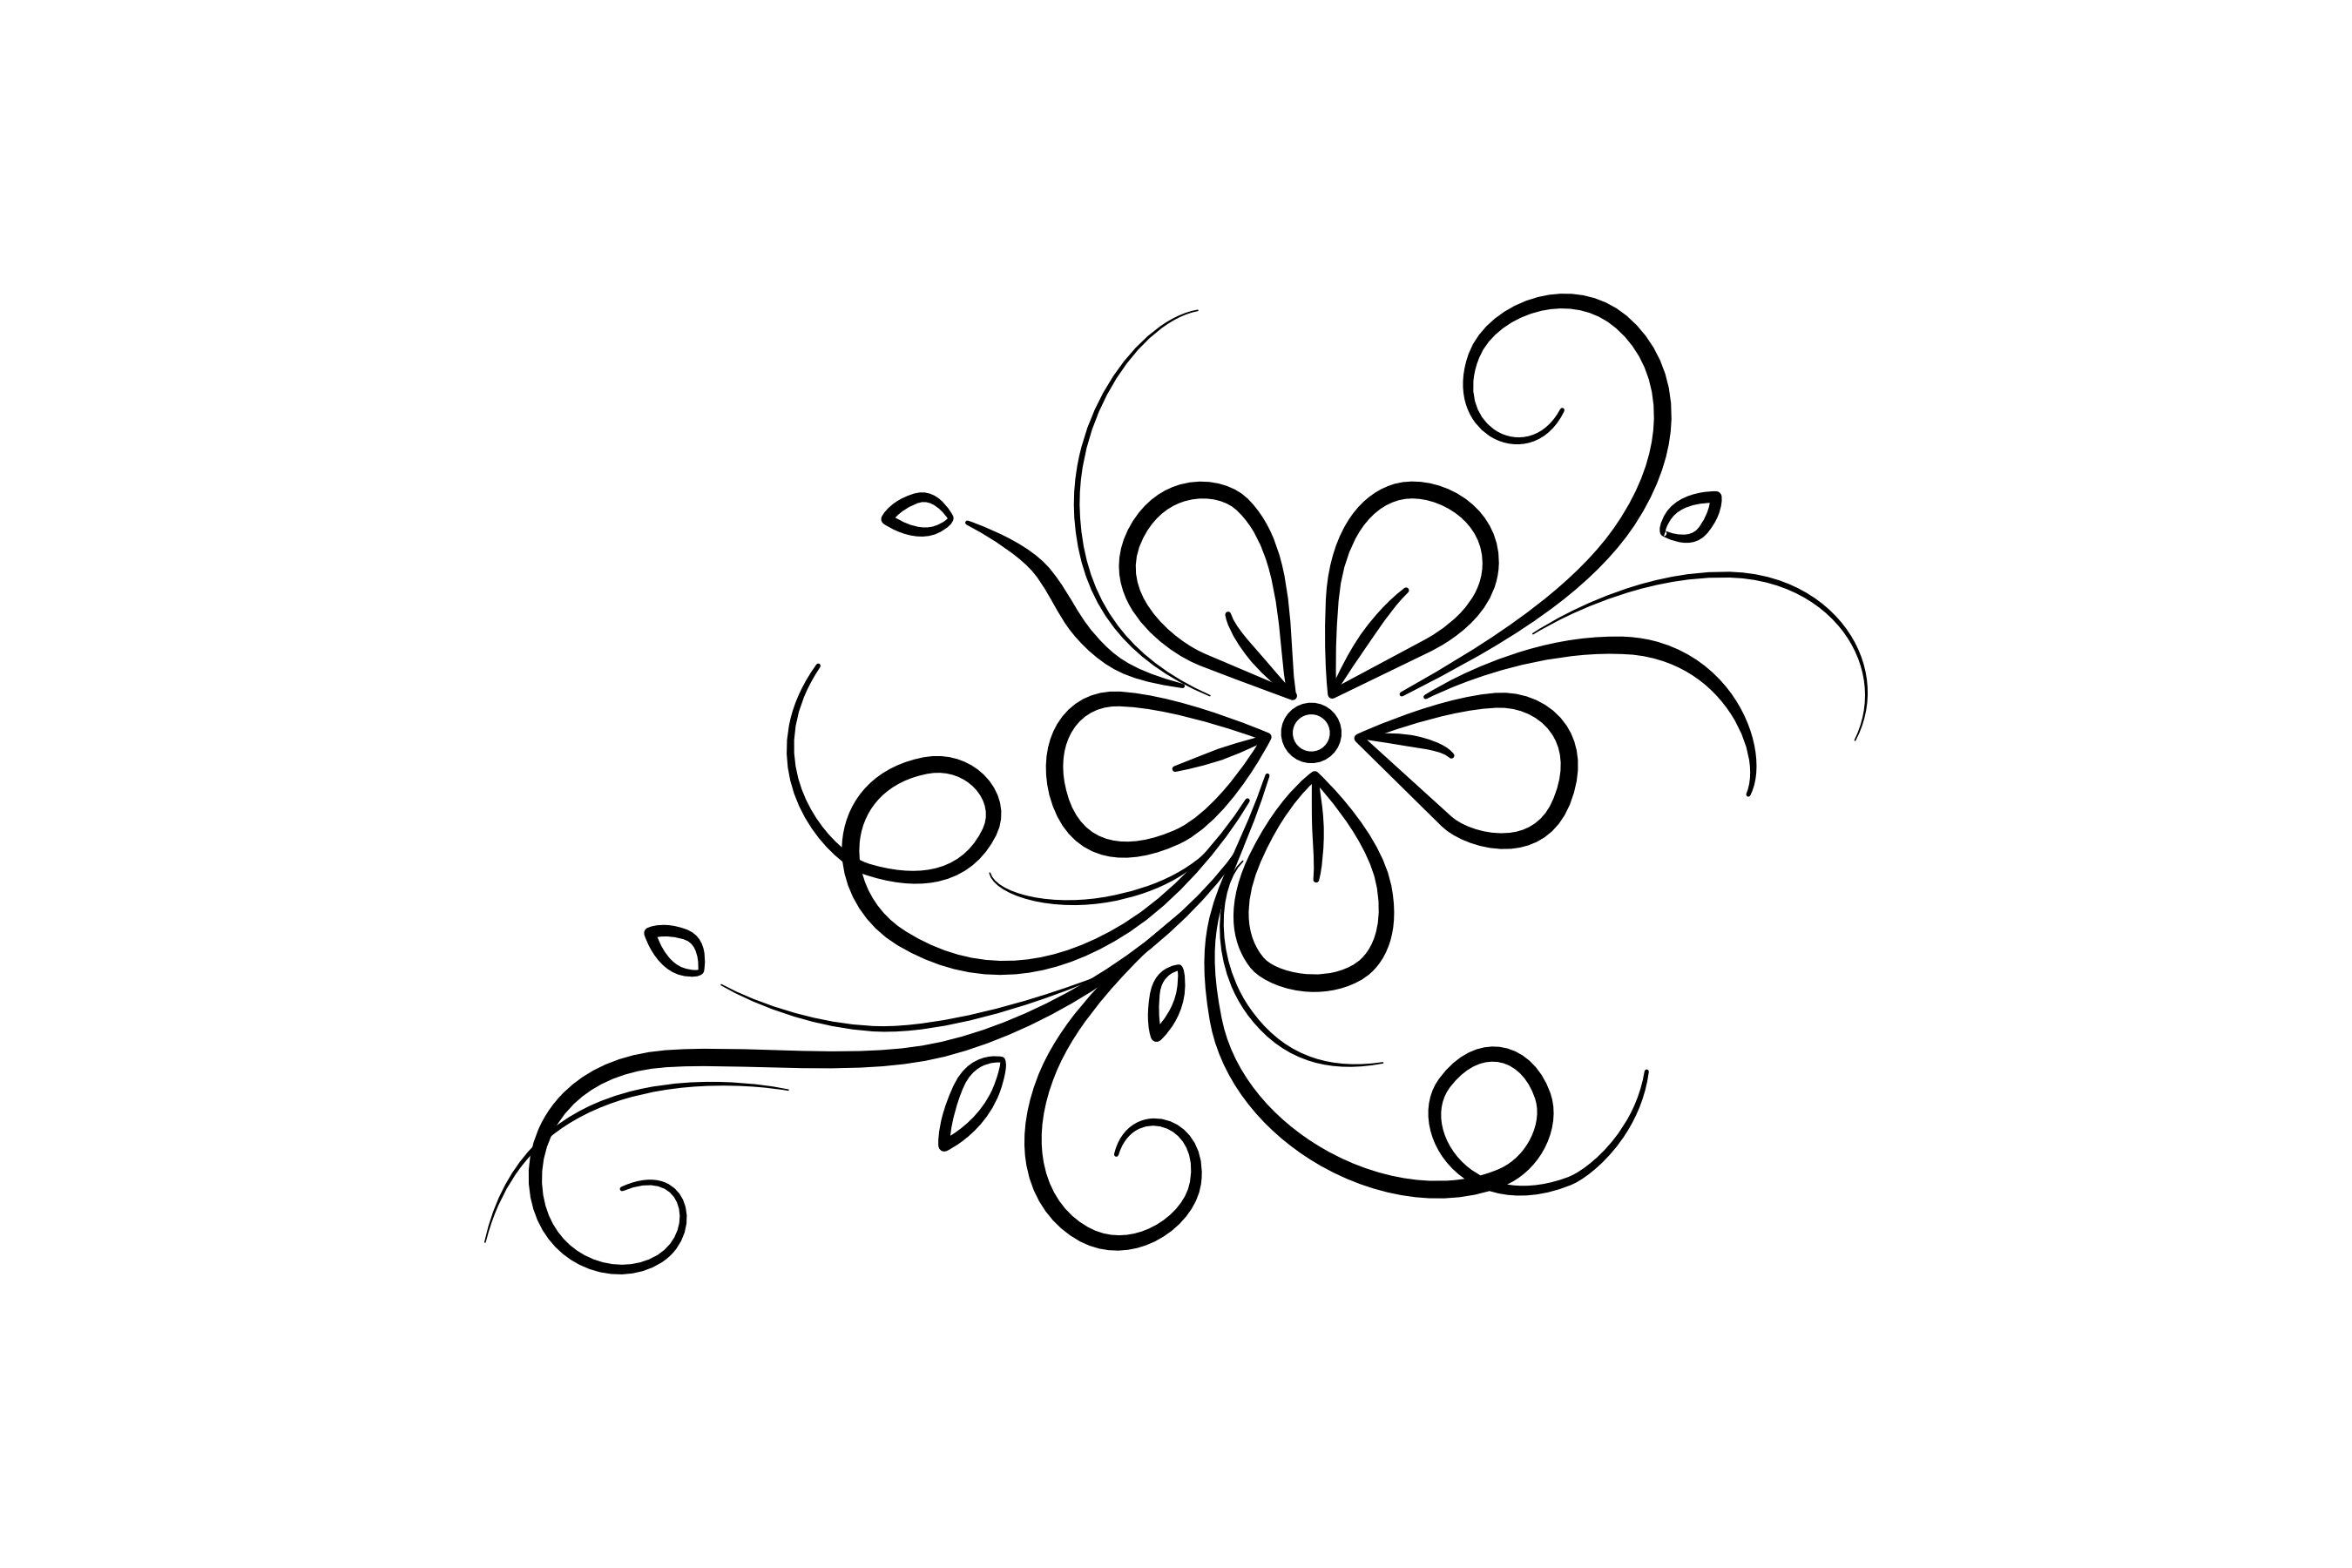 flower swirls design